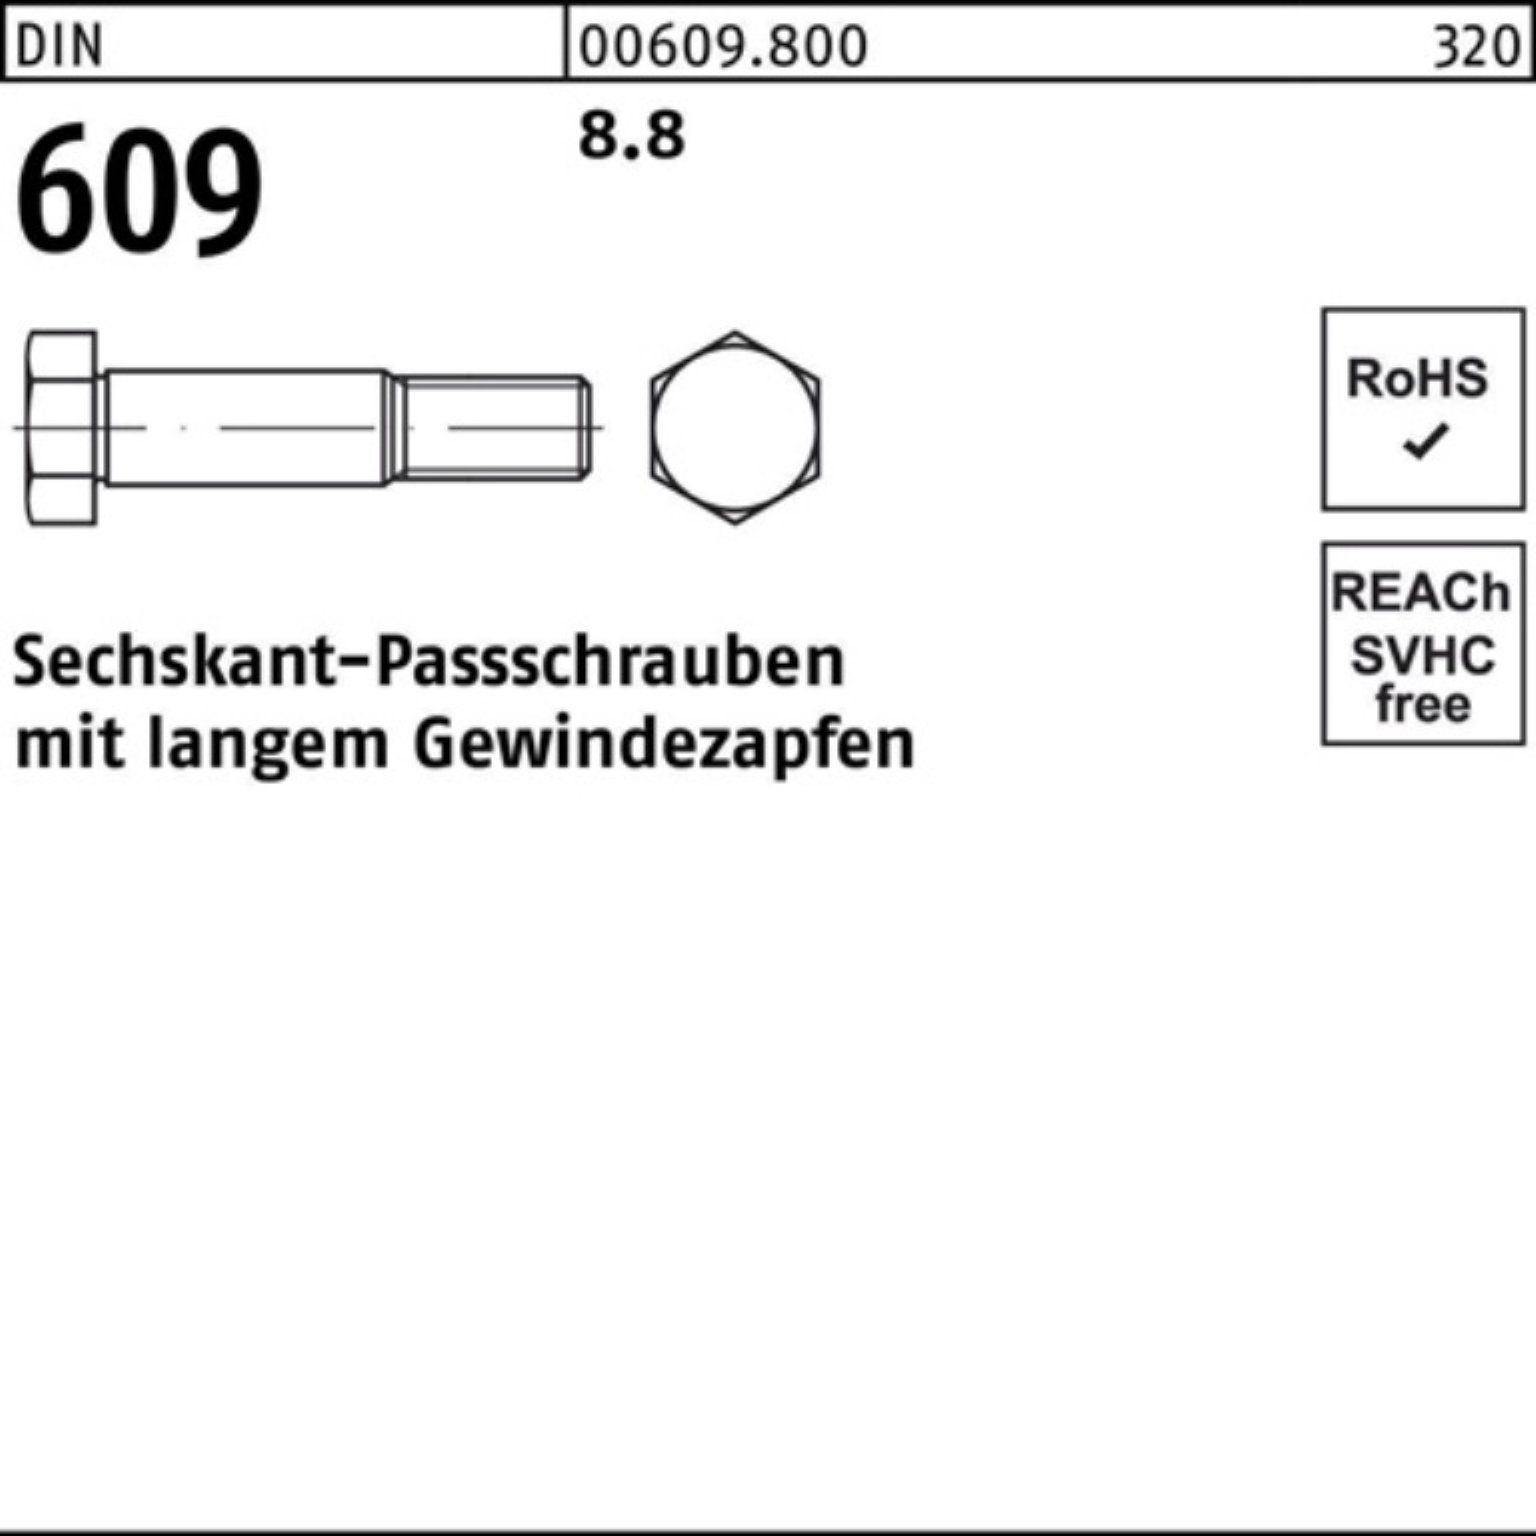 Sechskantpassschraube 609 Schraube 8 langem 100er Pack M8x Reyher 45 DIN Gewindezapfen